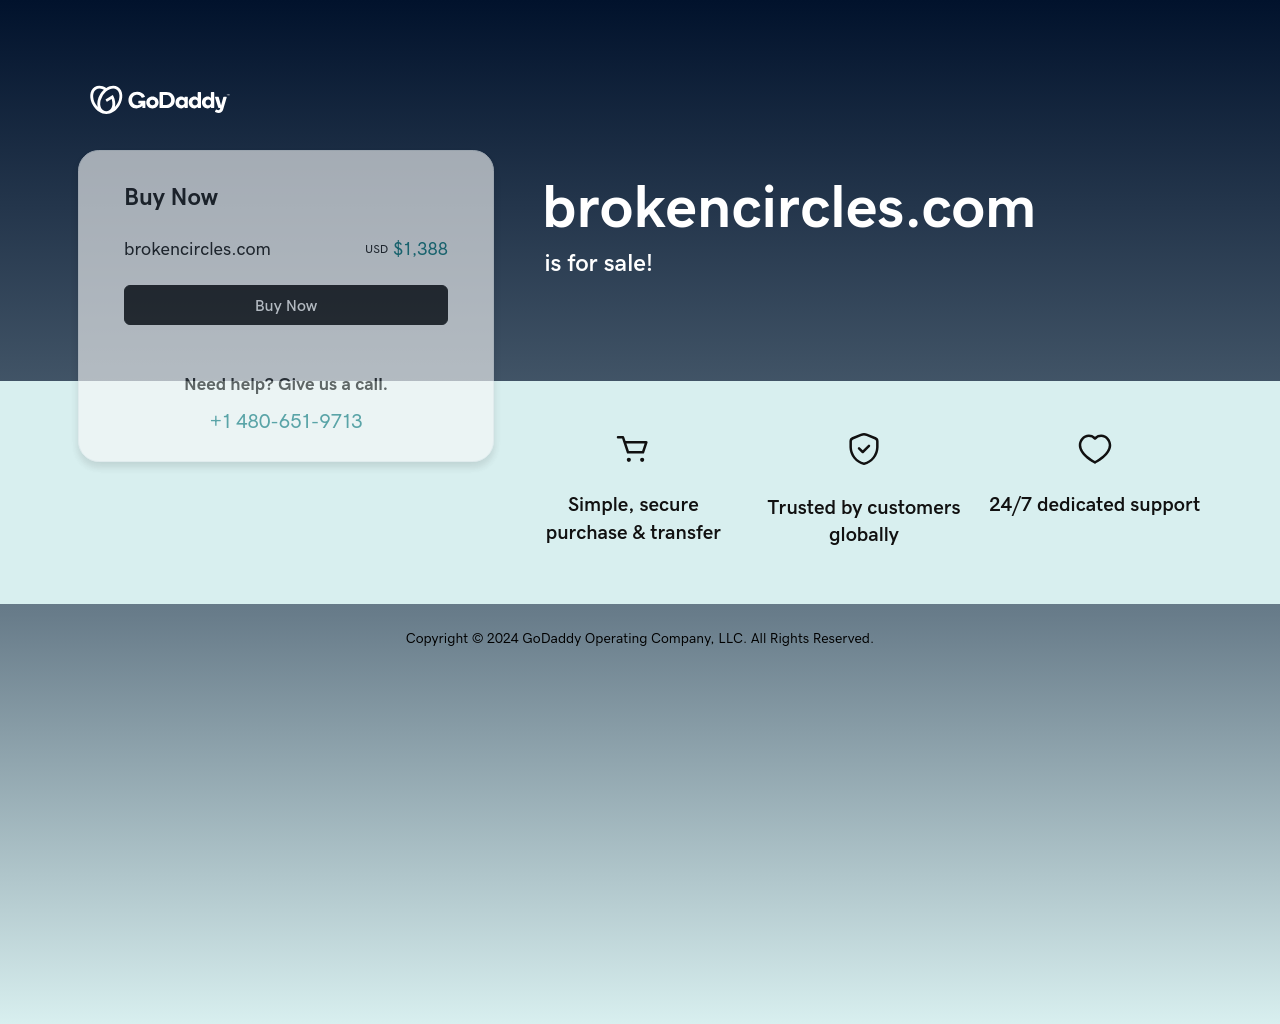 brokencircles.com